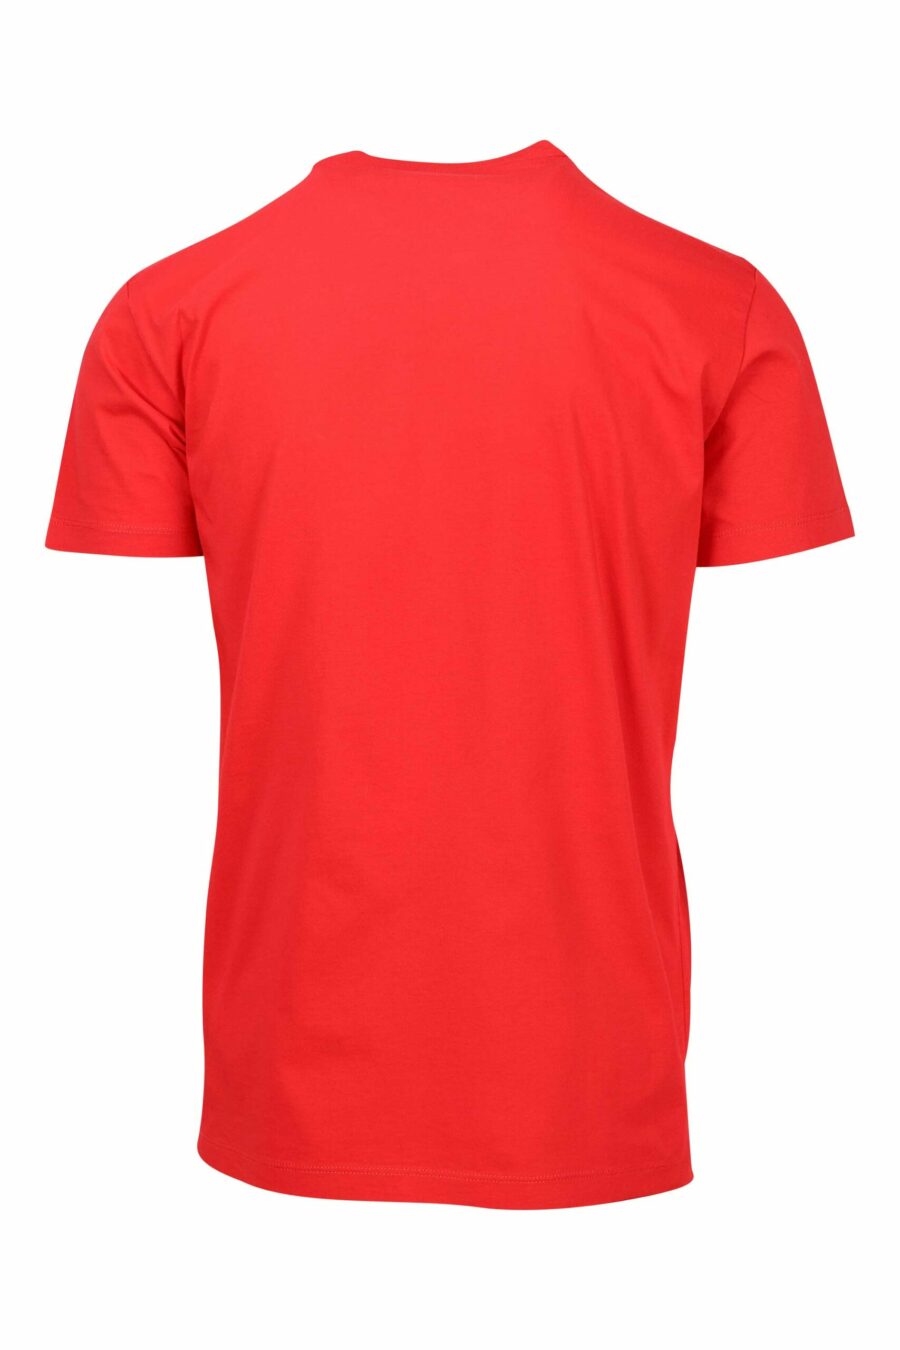 Camiseta roja con logo pequeño "ceresio 9" - 8052134197134 1 scaled